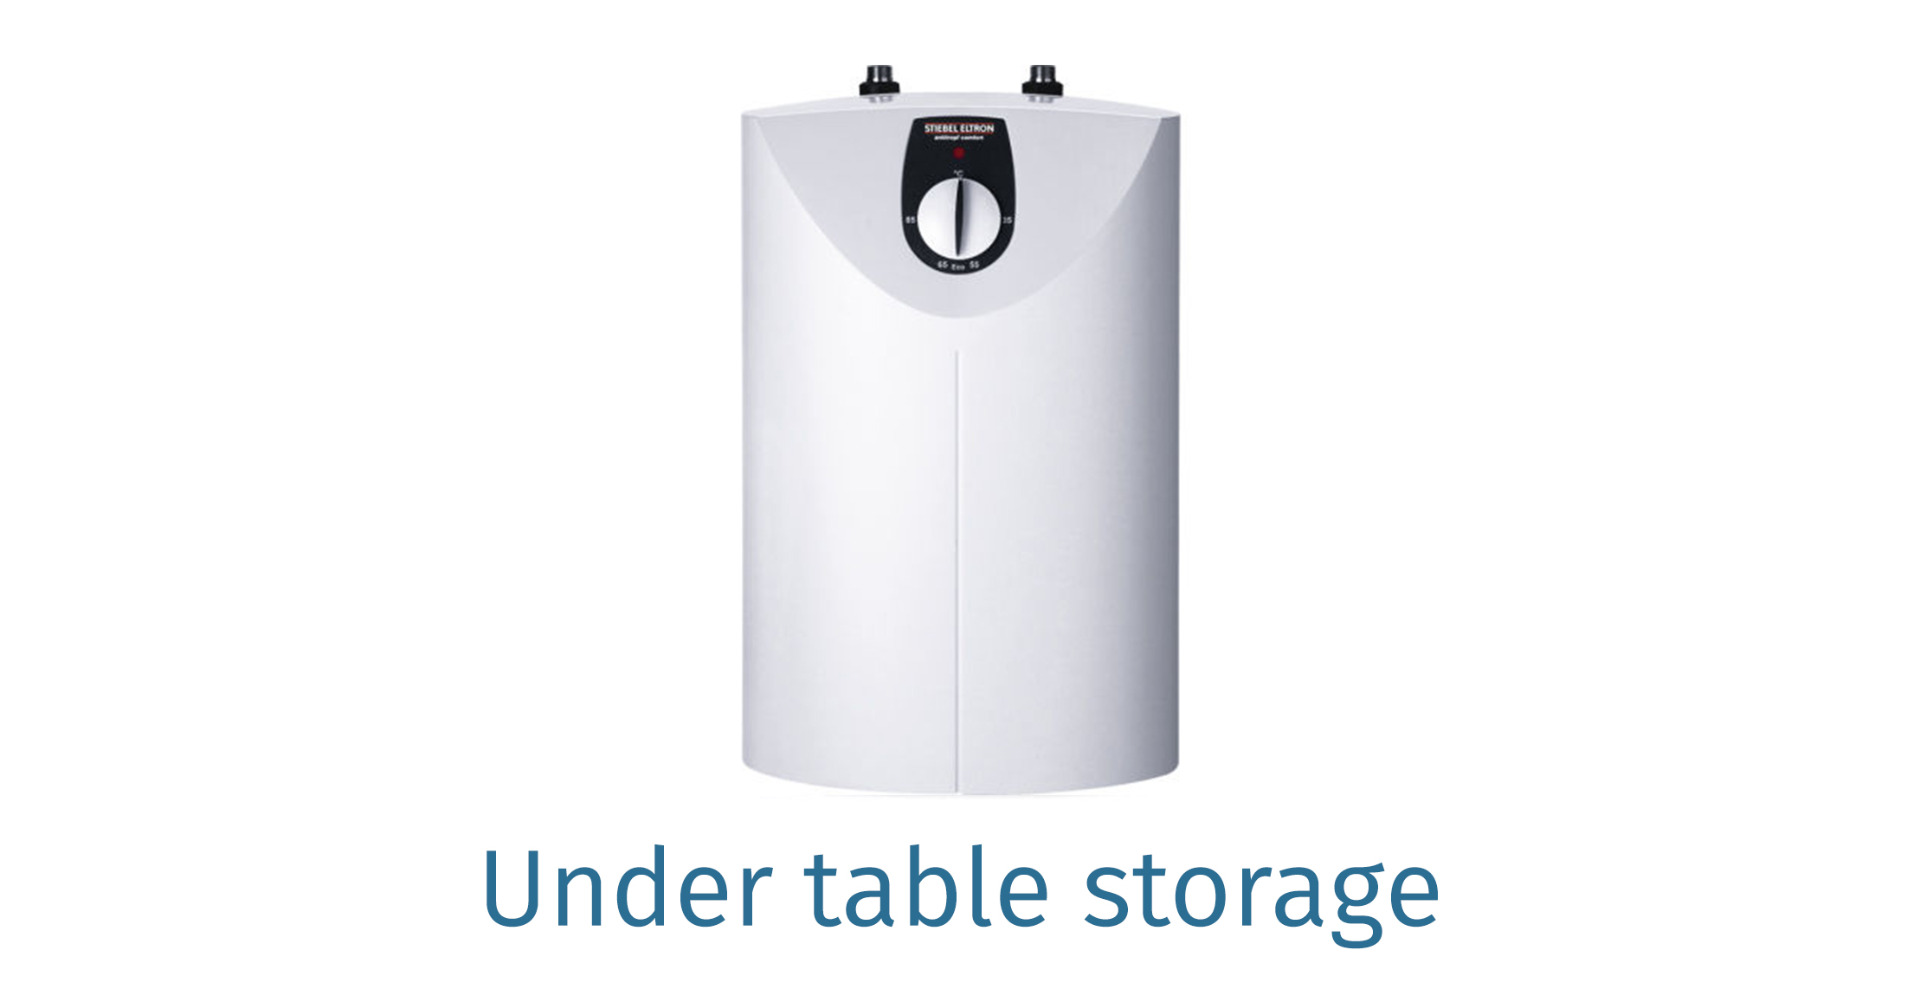 Under table storage